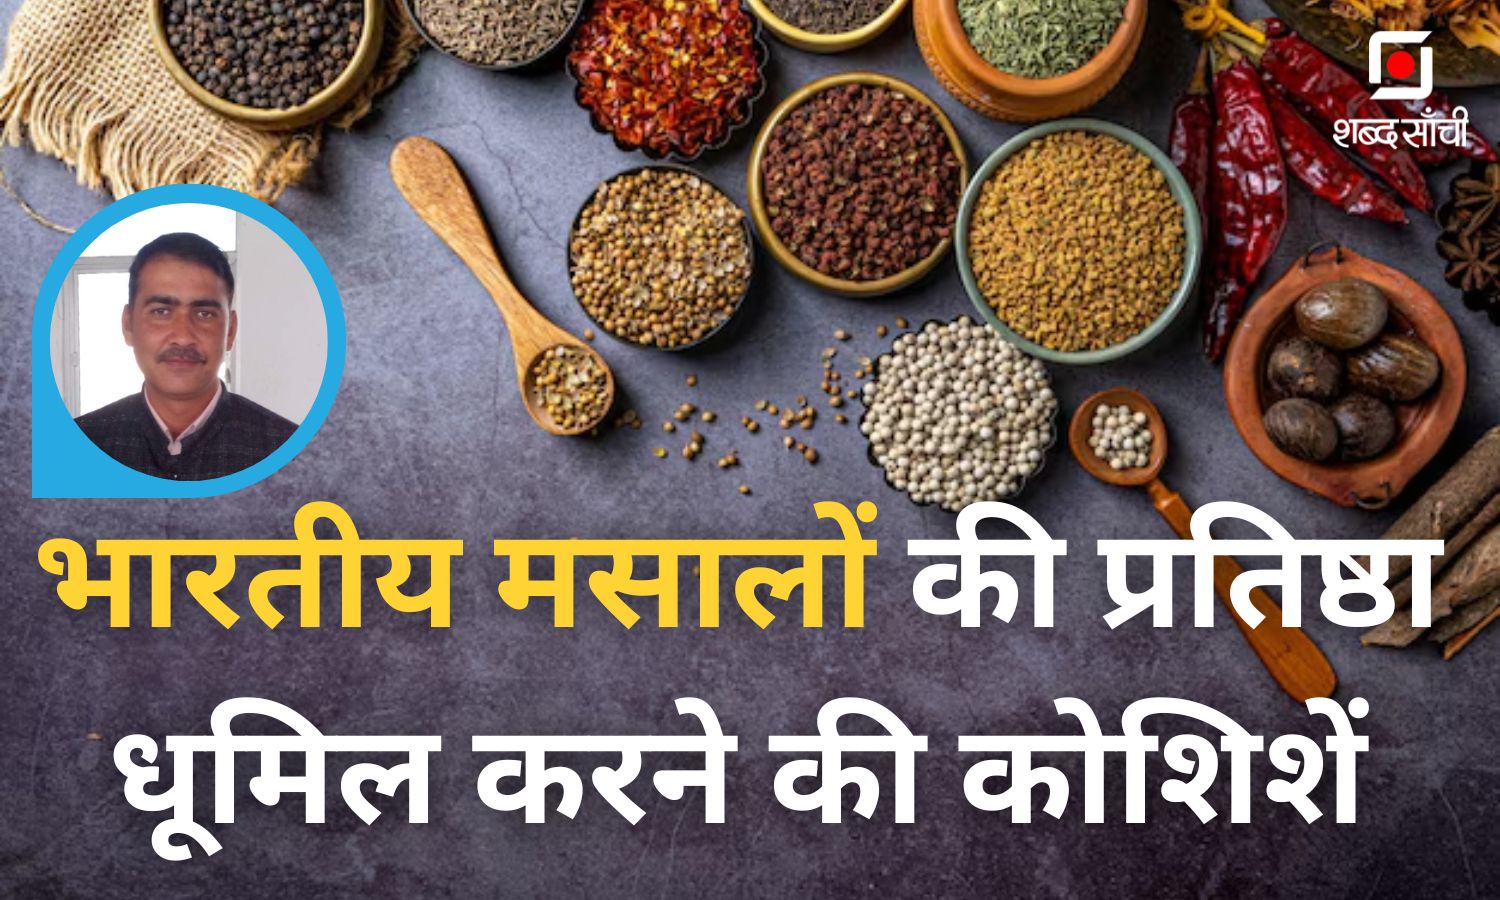 Conspiracy To Defame Indian Spices | भारतीय मसालों की प्रतिष्ठा धूमिल करने की कोशिशें- डॉ. रामानुज पाठक